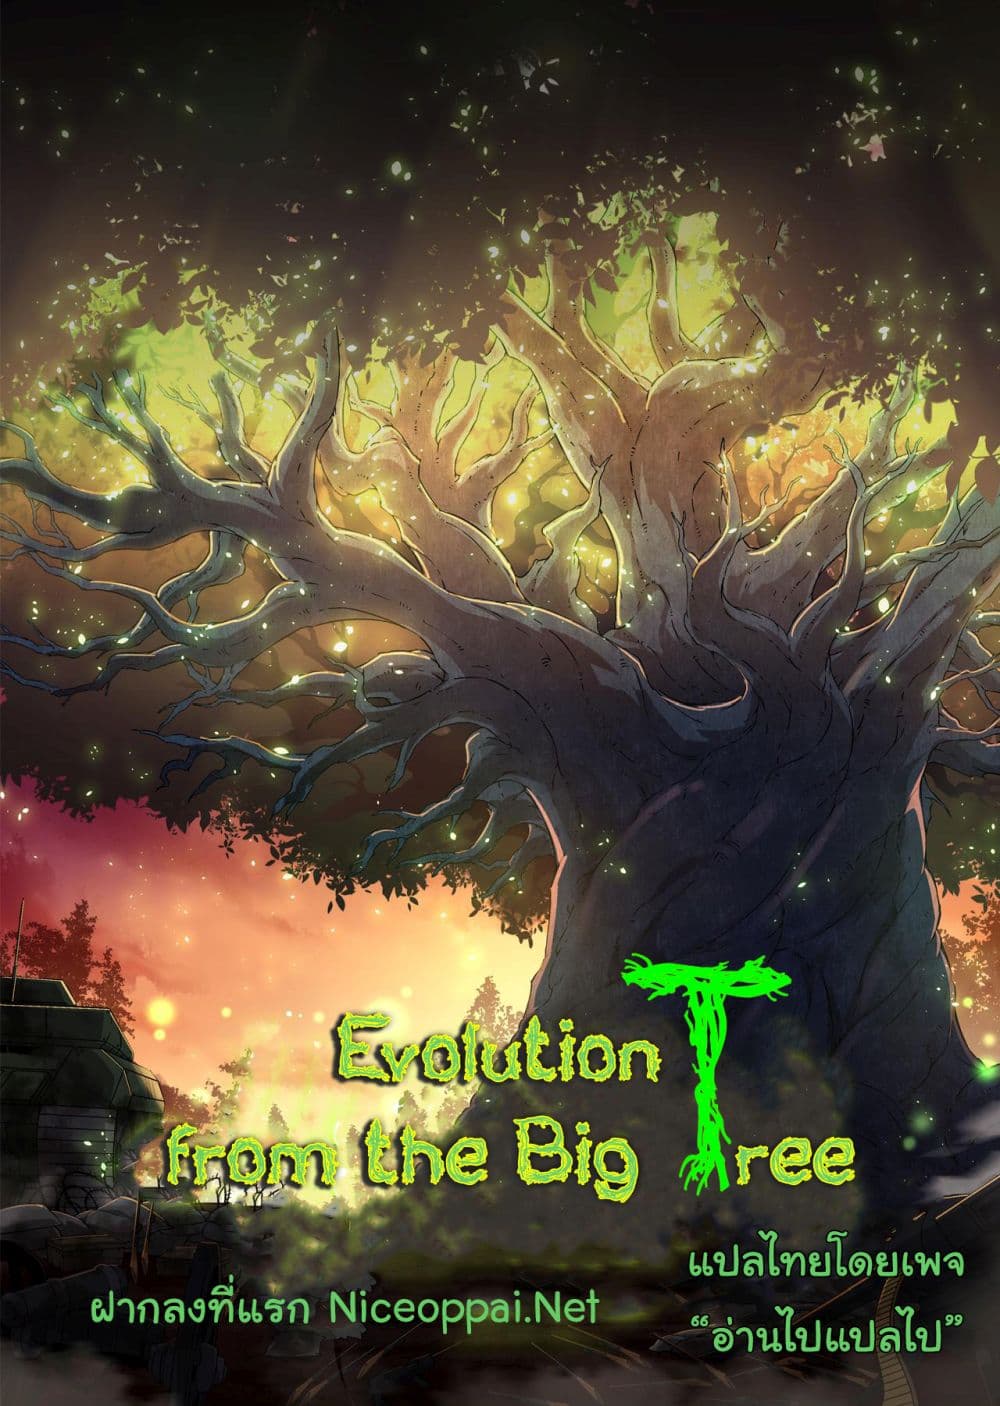 Evolution from the Big Tree Ã Â¸â€¢Ã Â¸Â­Ã Â¸â„¢Ã Â¸â€”Ã Â¸ÂµÃ Â¹Ë† 31 (1)